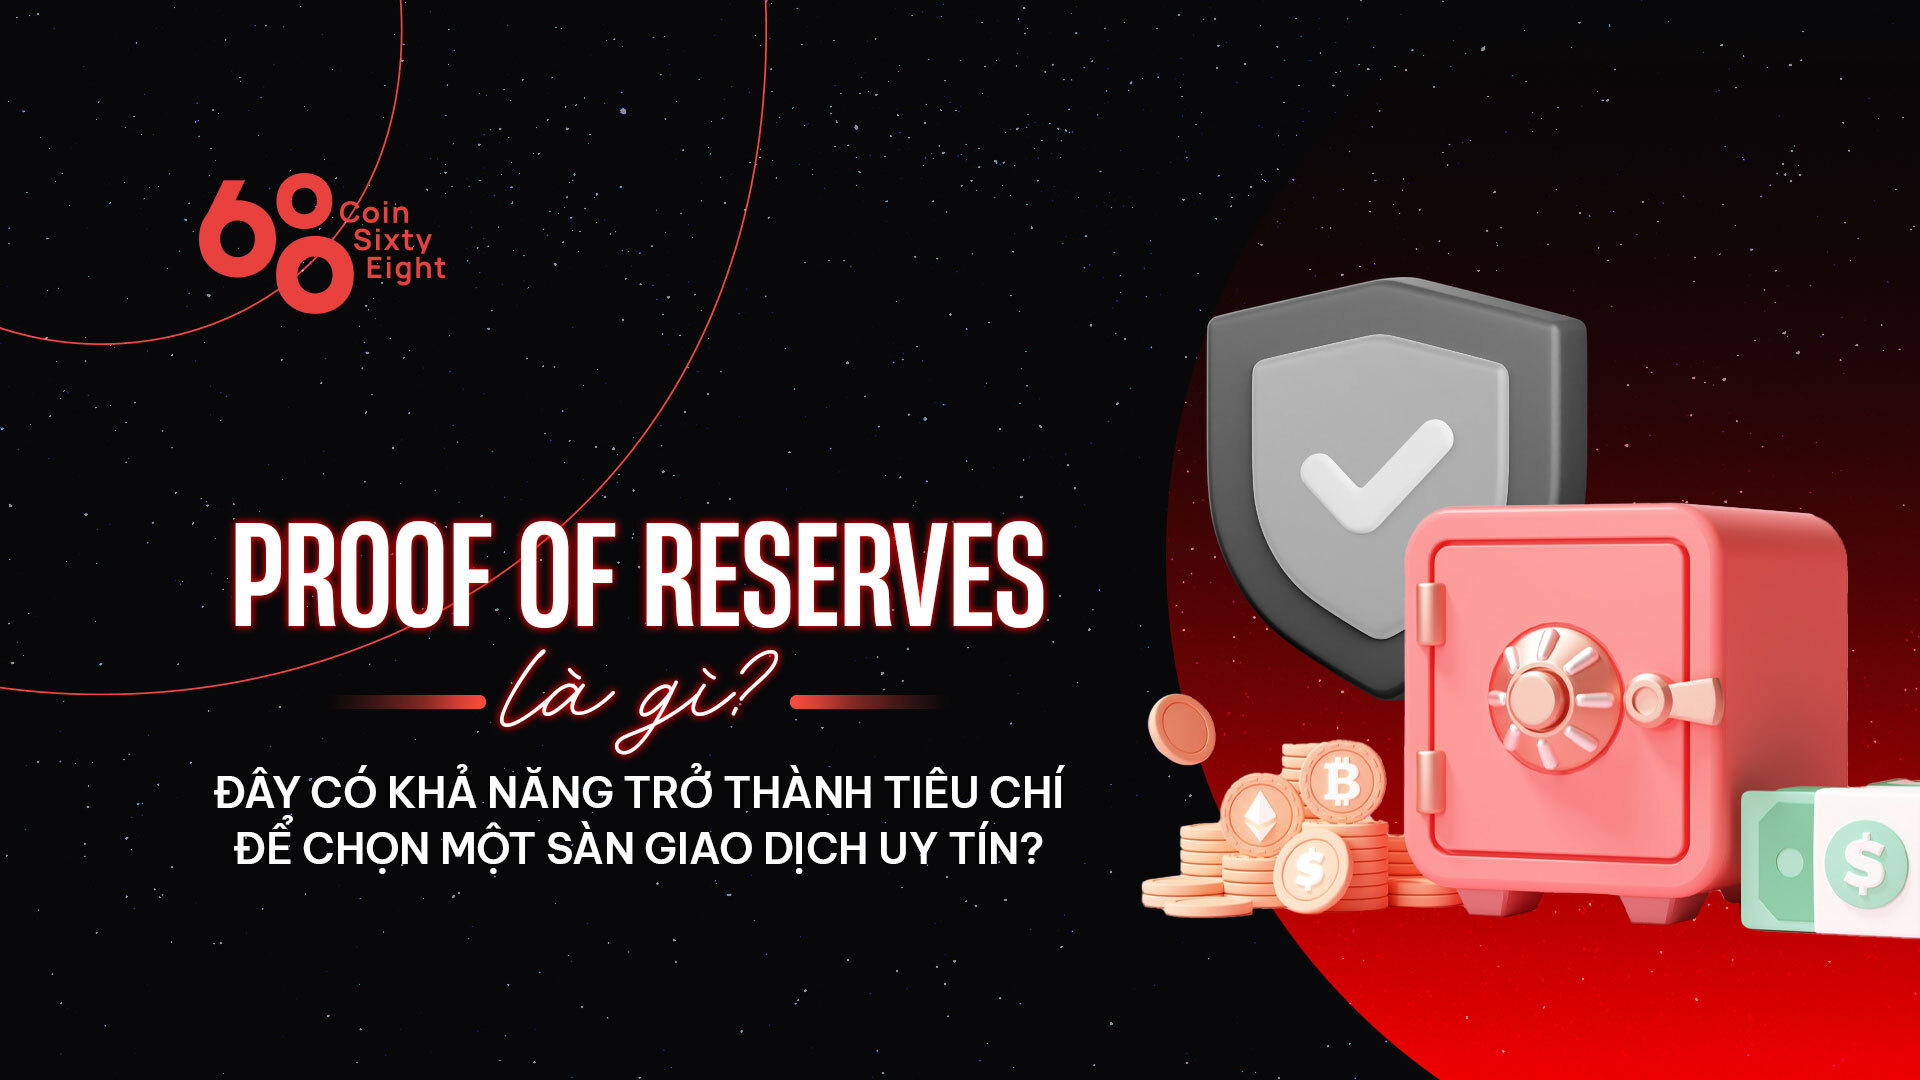 Proof of Reserves là gì?